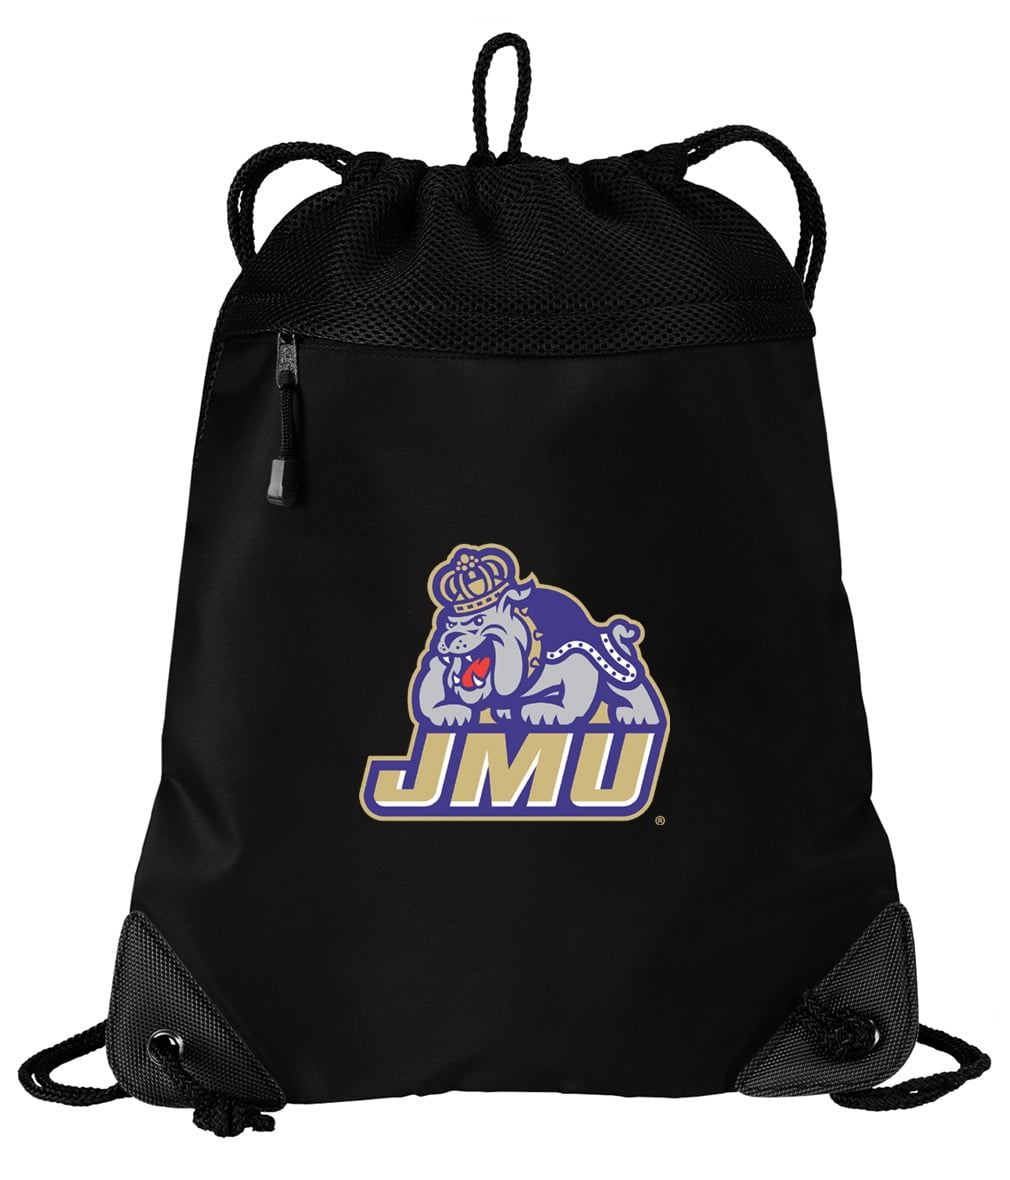 Large JMU Duffel Bag James Madison University Suitcase or Gym Bag for Men Or Her 